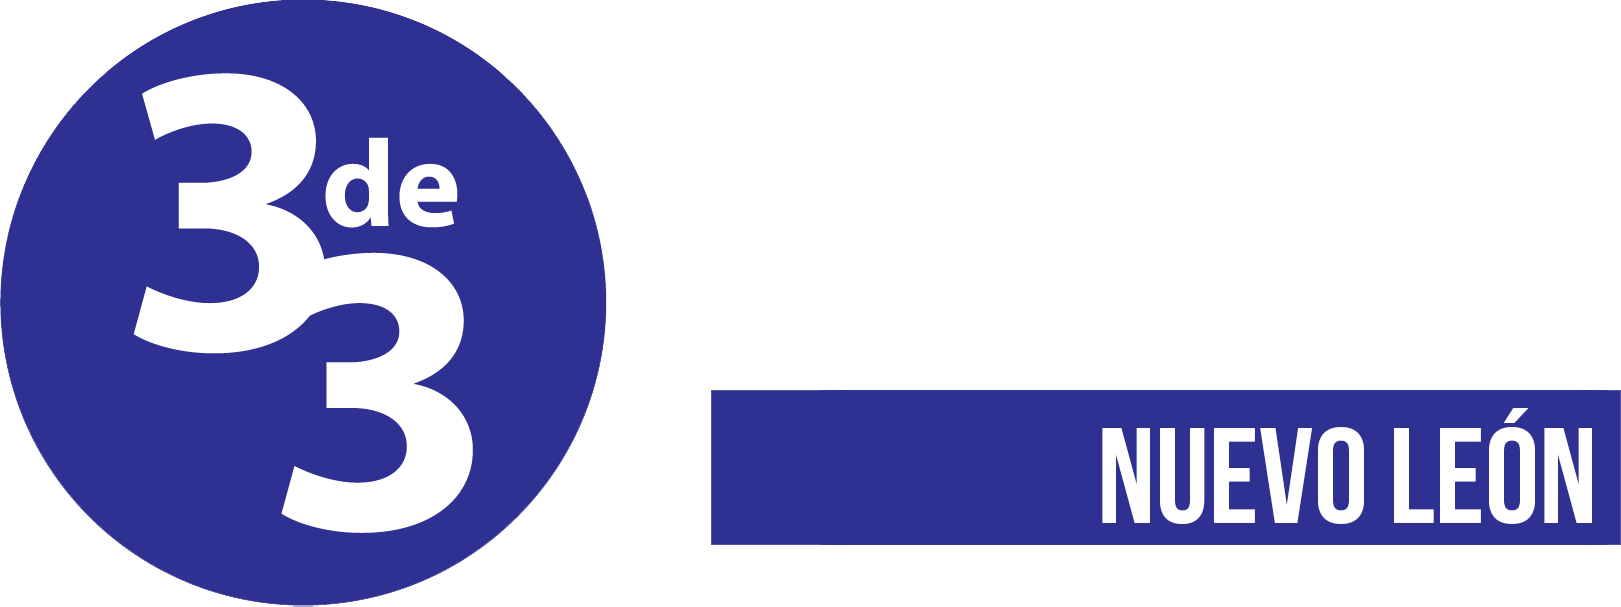 Iniciativa 3 de 3 por la integridad - San Luis Potosí